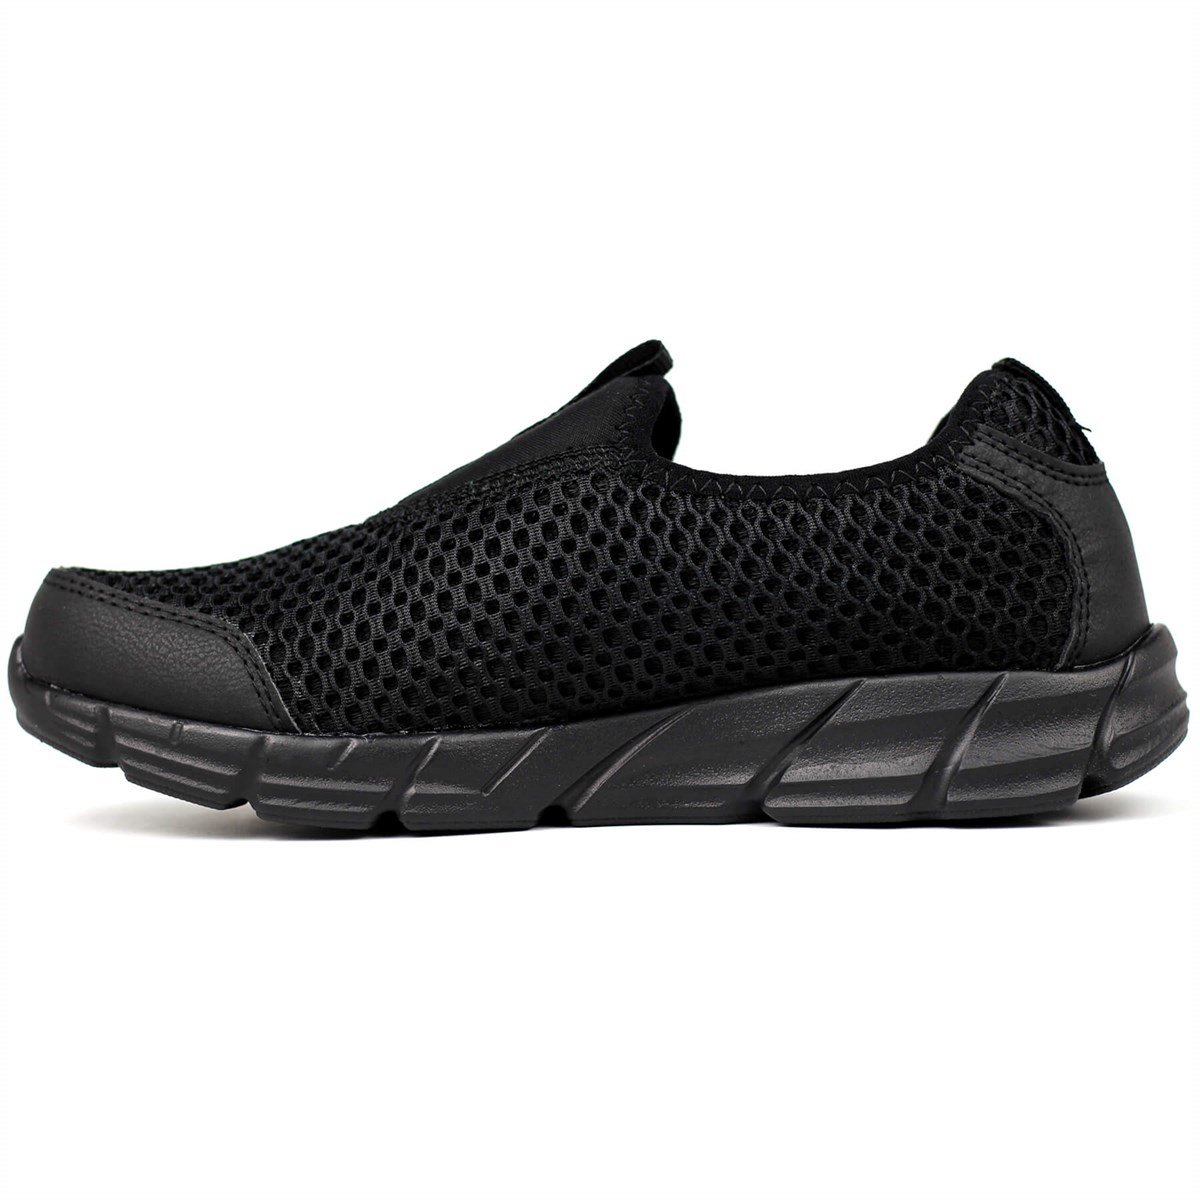 Scooter 5430 Bayan Spor/Sneaker Tekstil Siyah Ayakkabı MACZ005430-Siyah